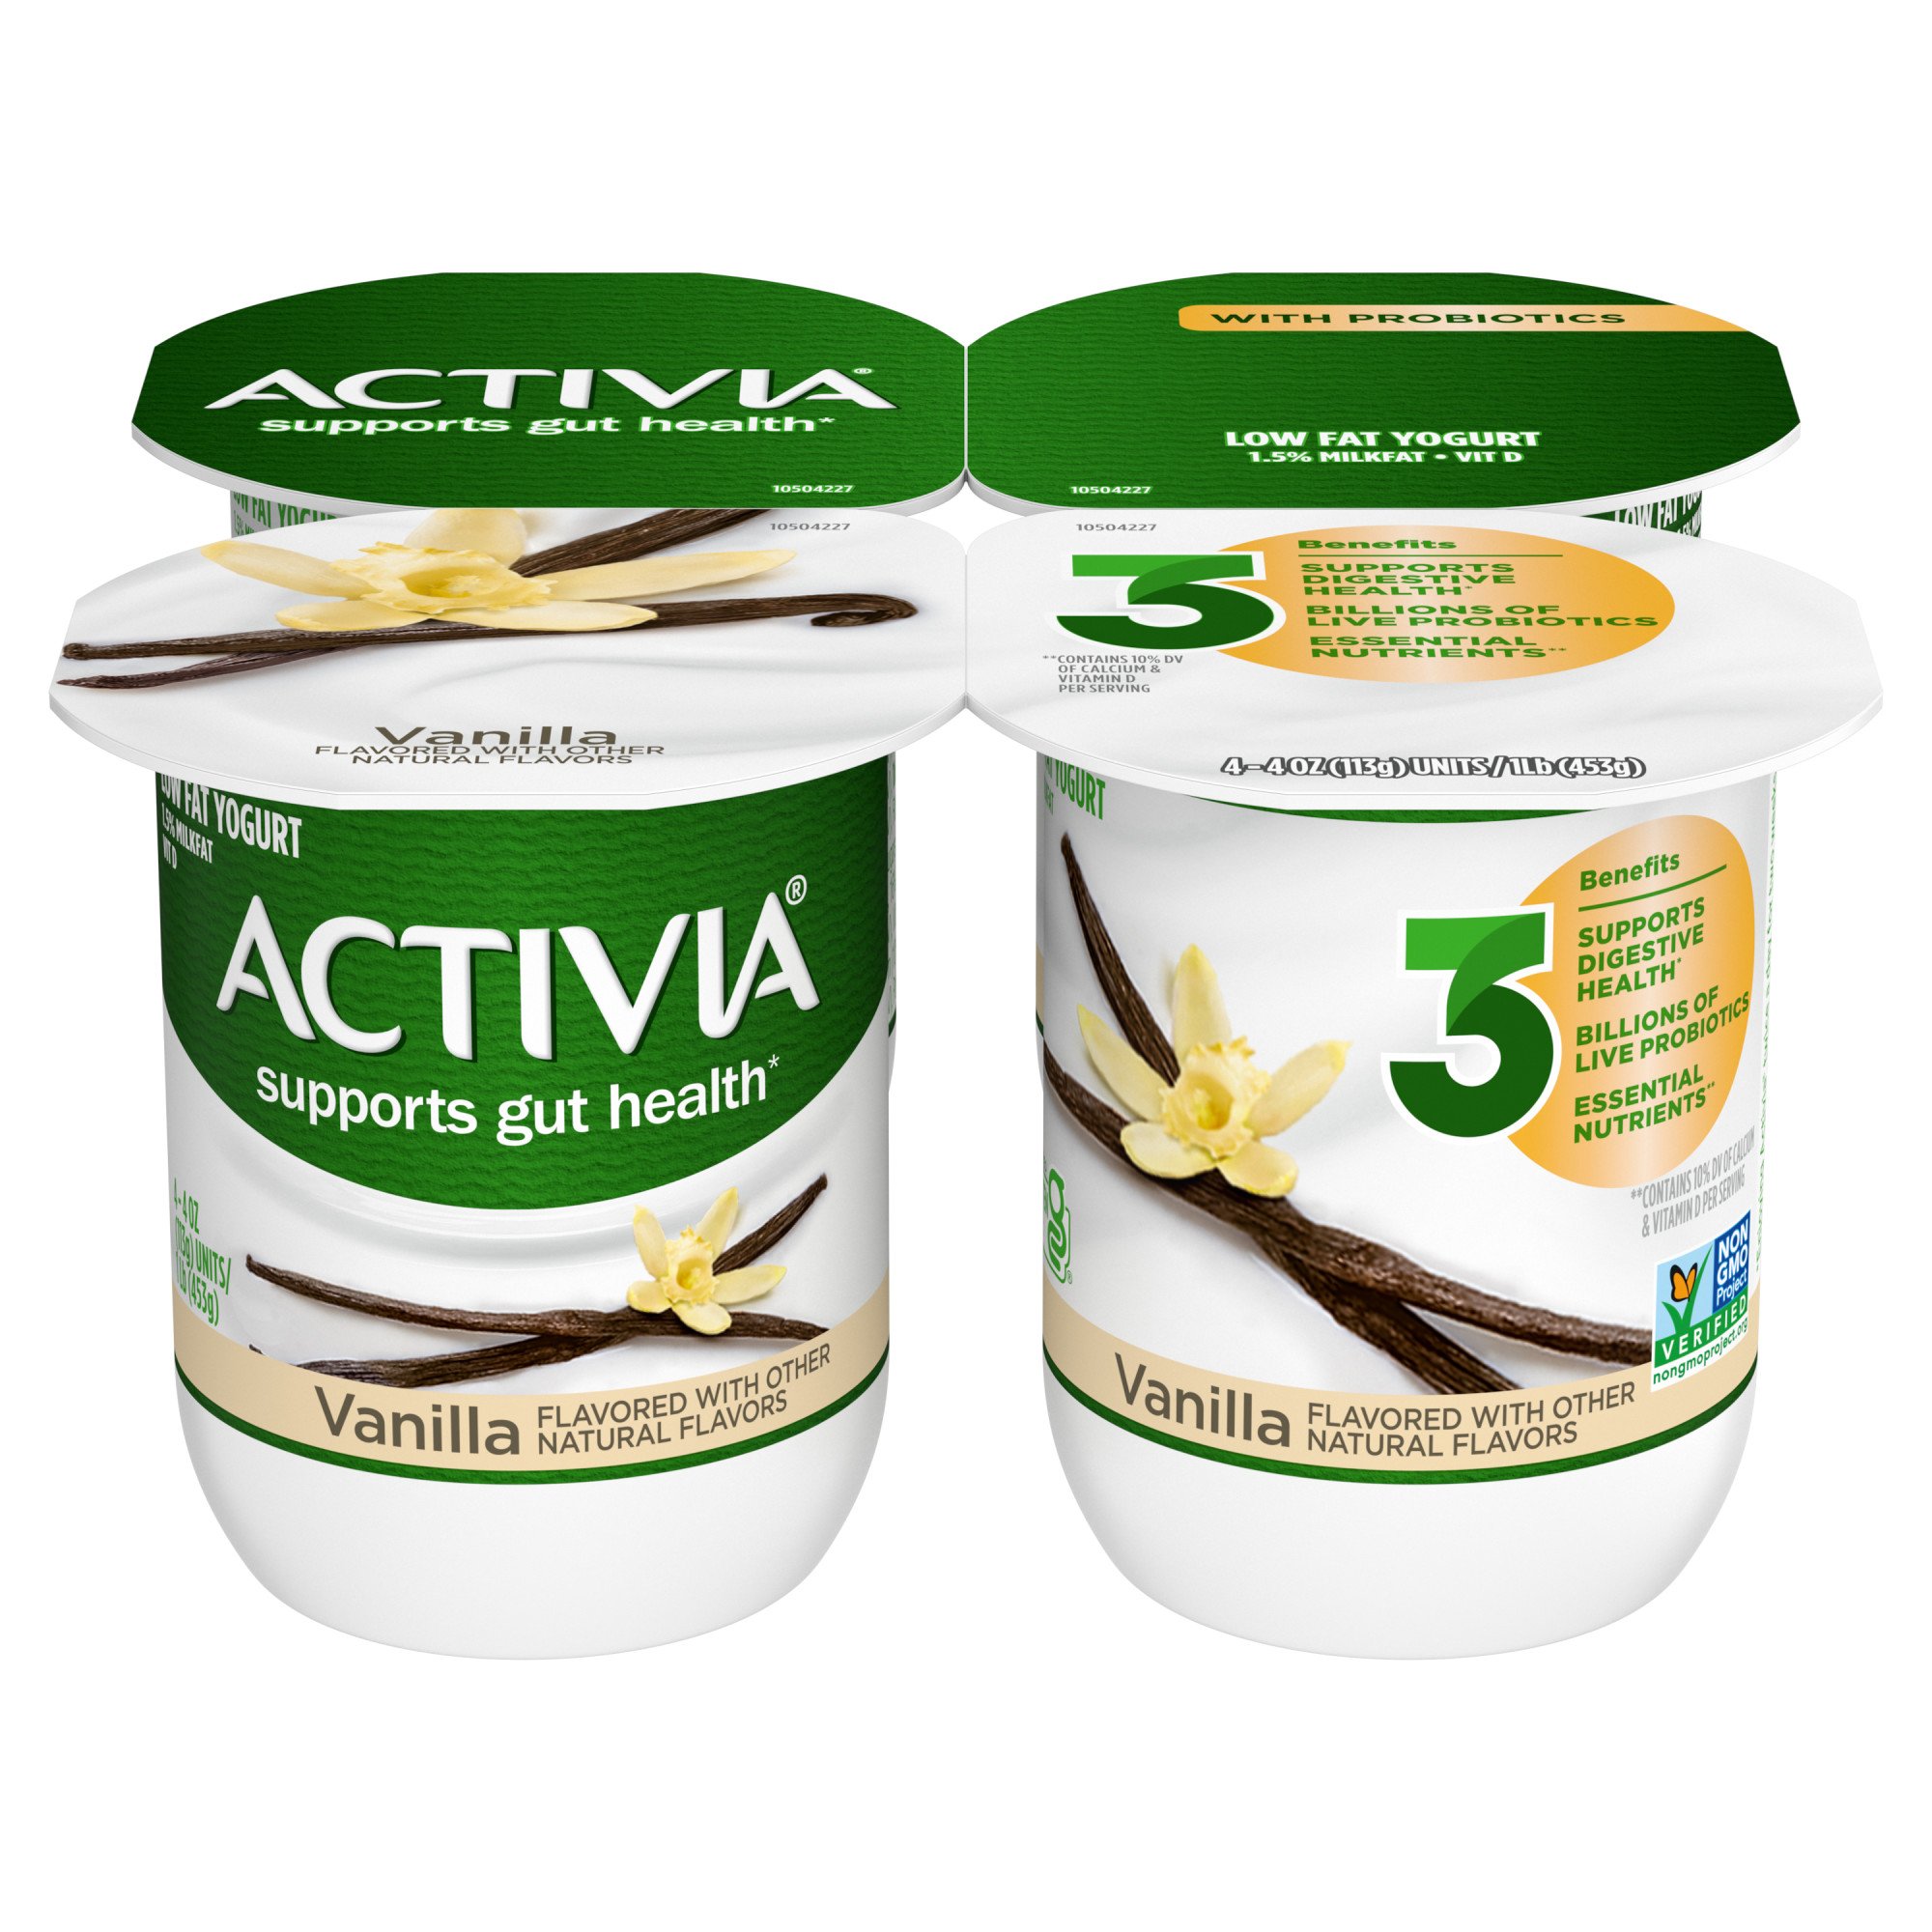 Dannon Activia Low Fat Vanilla Yogurt Shop Yogurt At H E B 5344